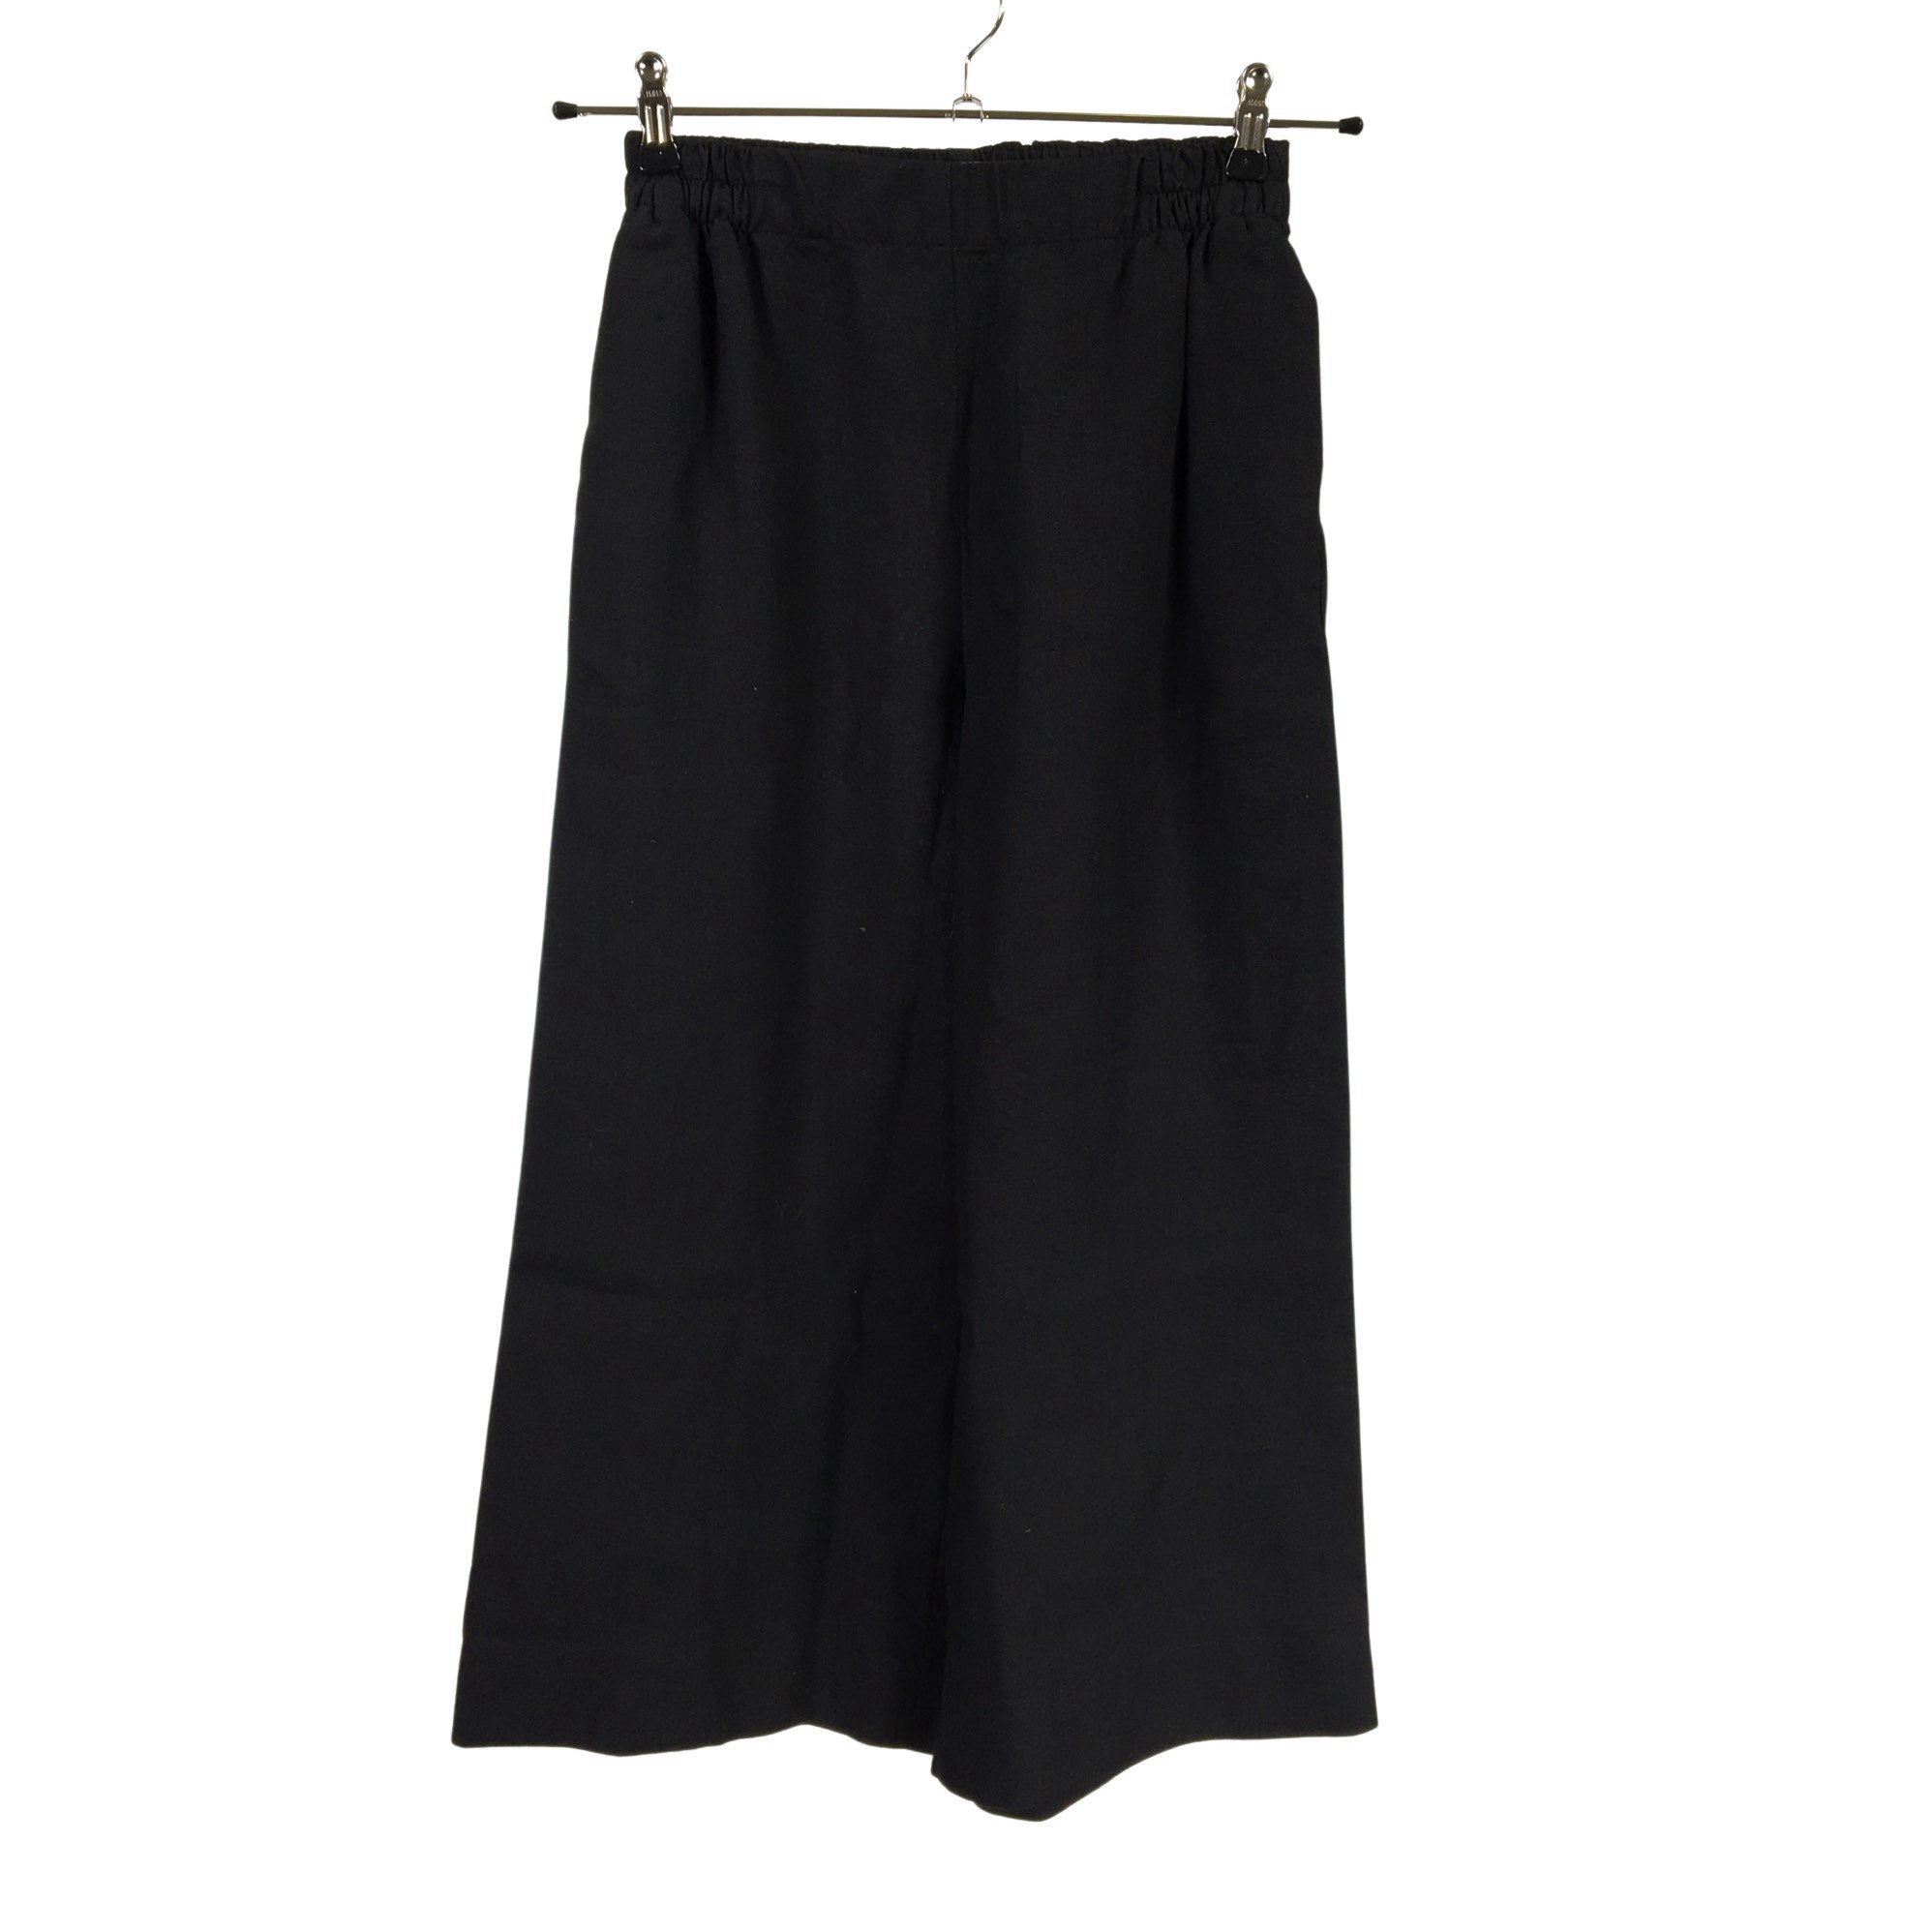 Women's Marimekko Trousers, size 34 (Black) | Emmy